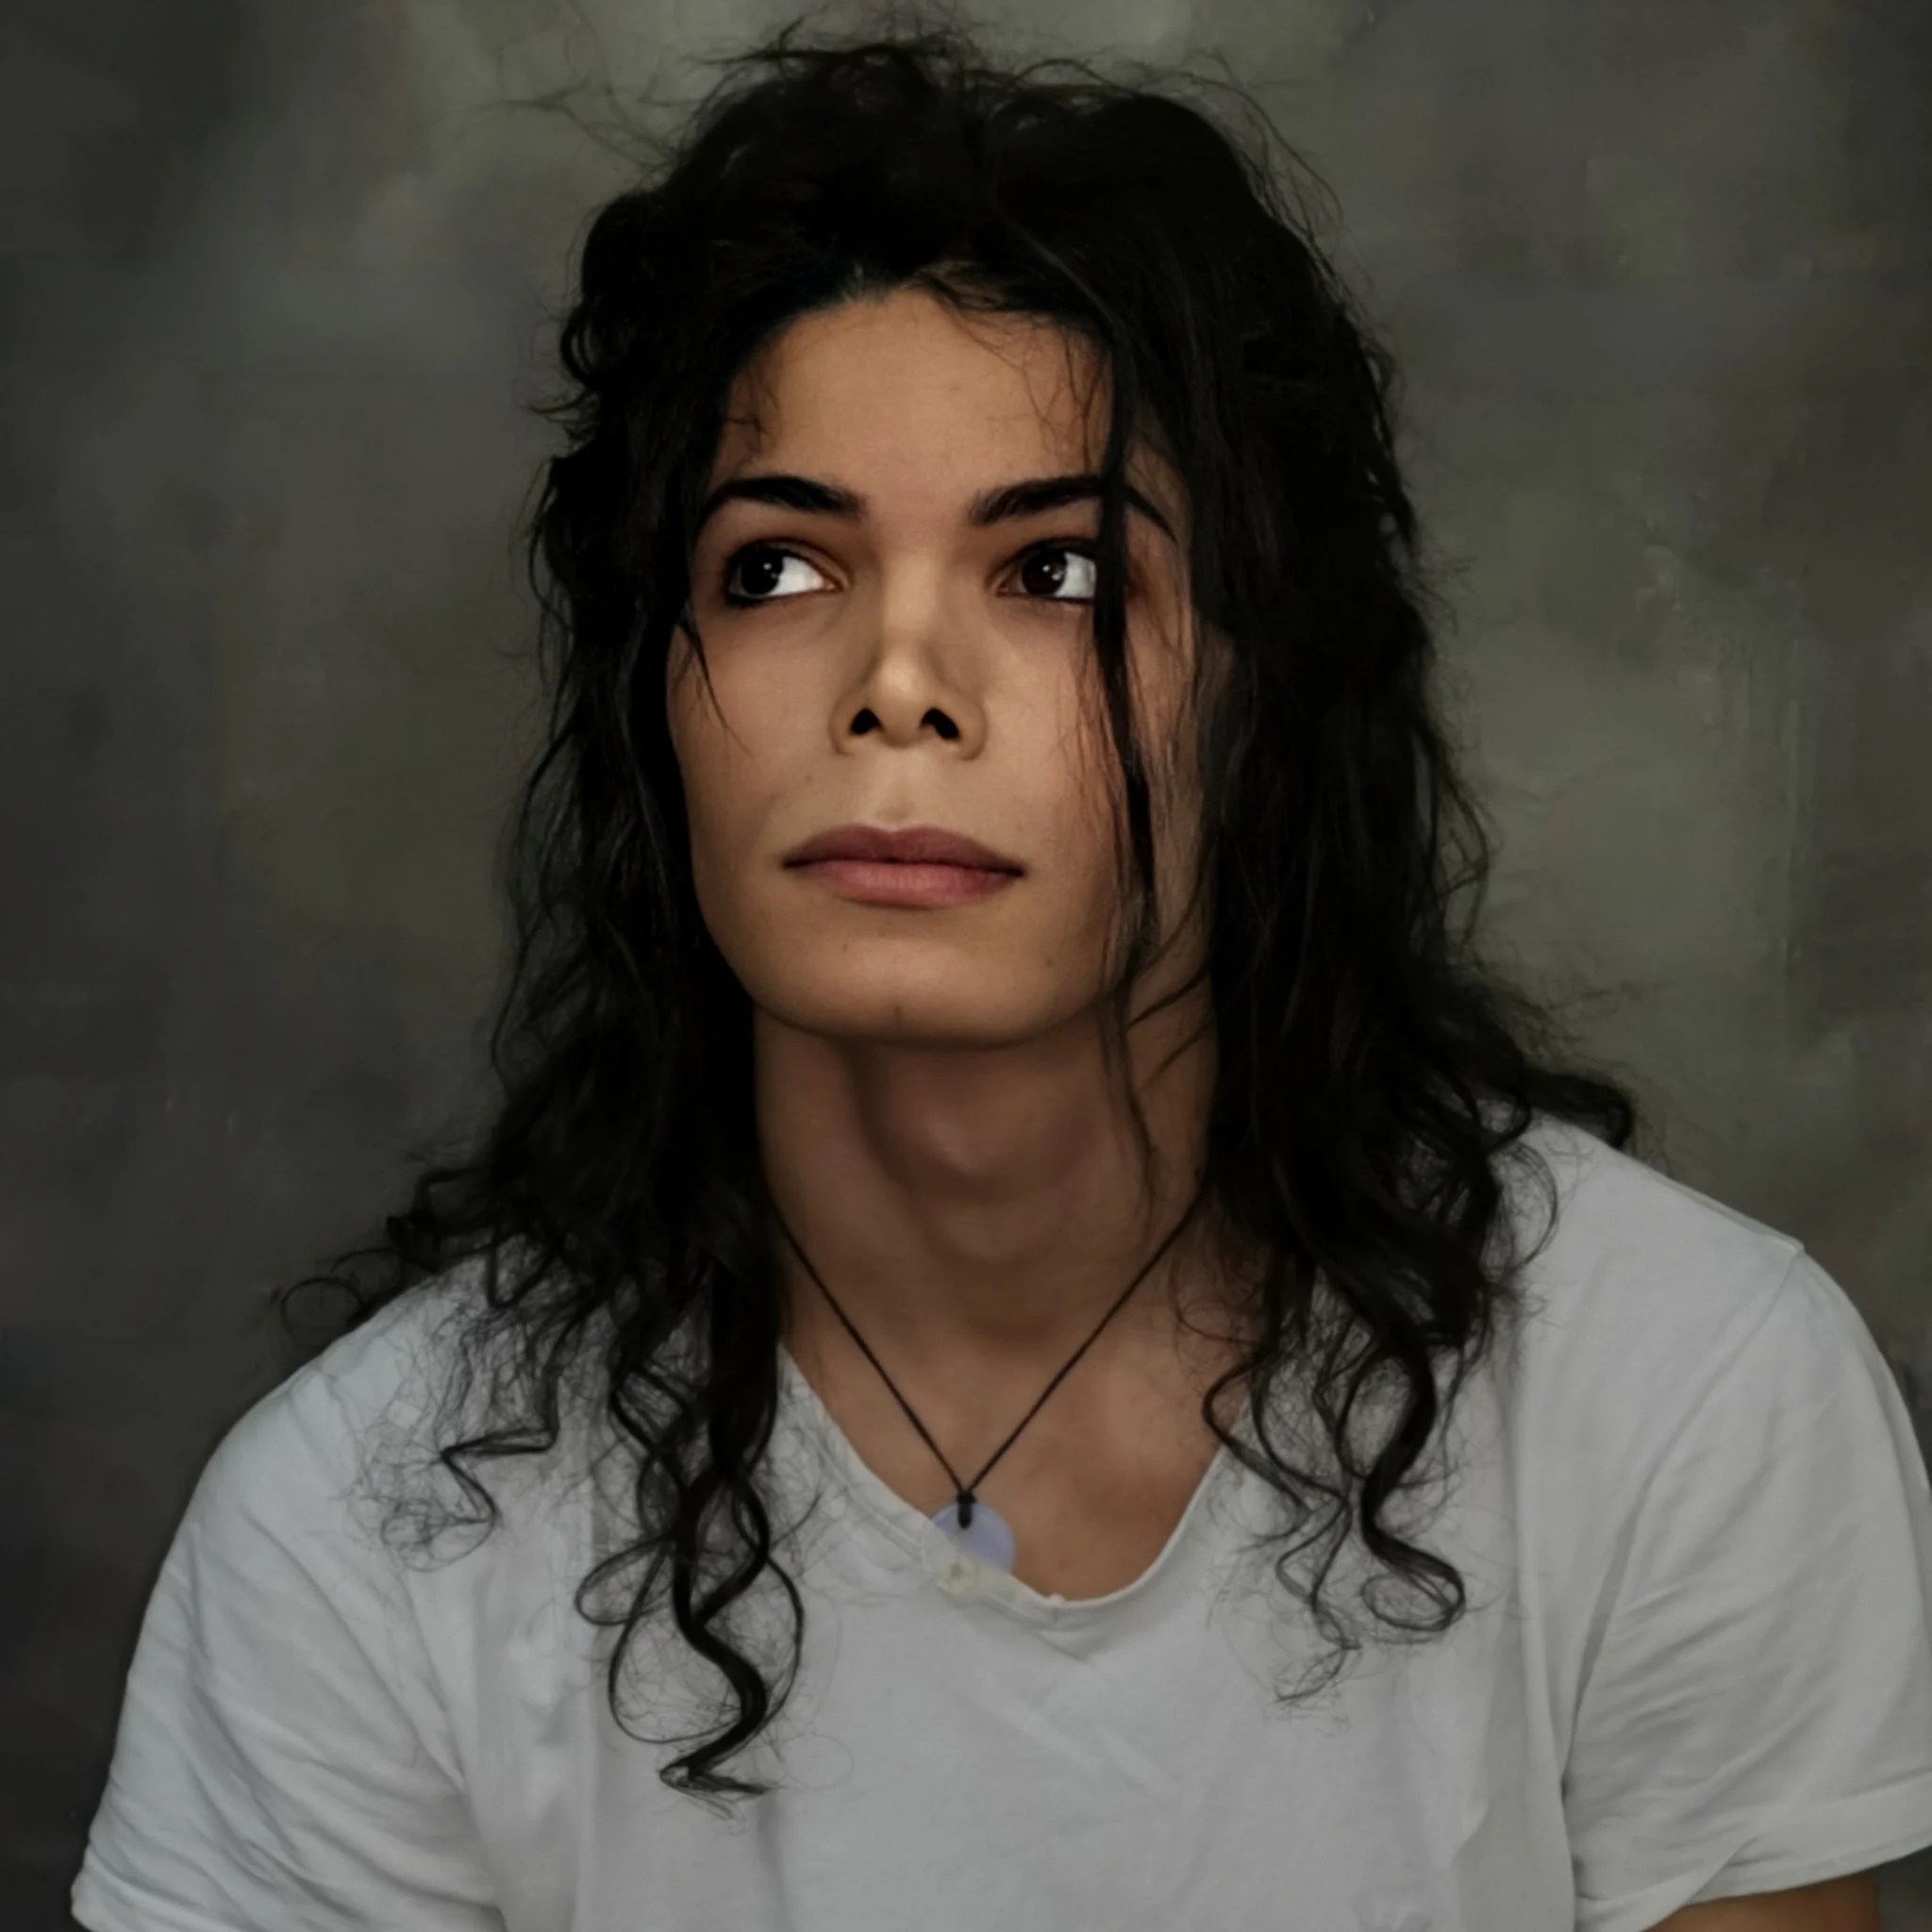 Joven que es idéntico a Michael Jackson dice no tener cirugías